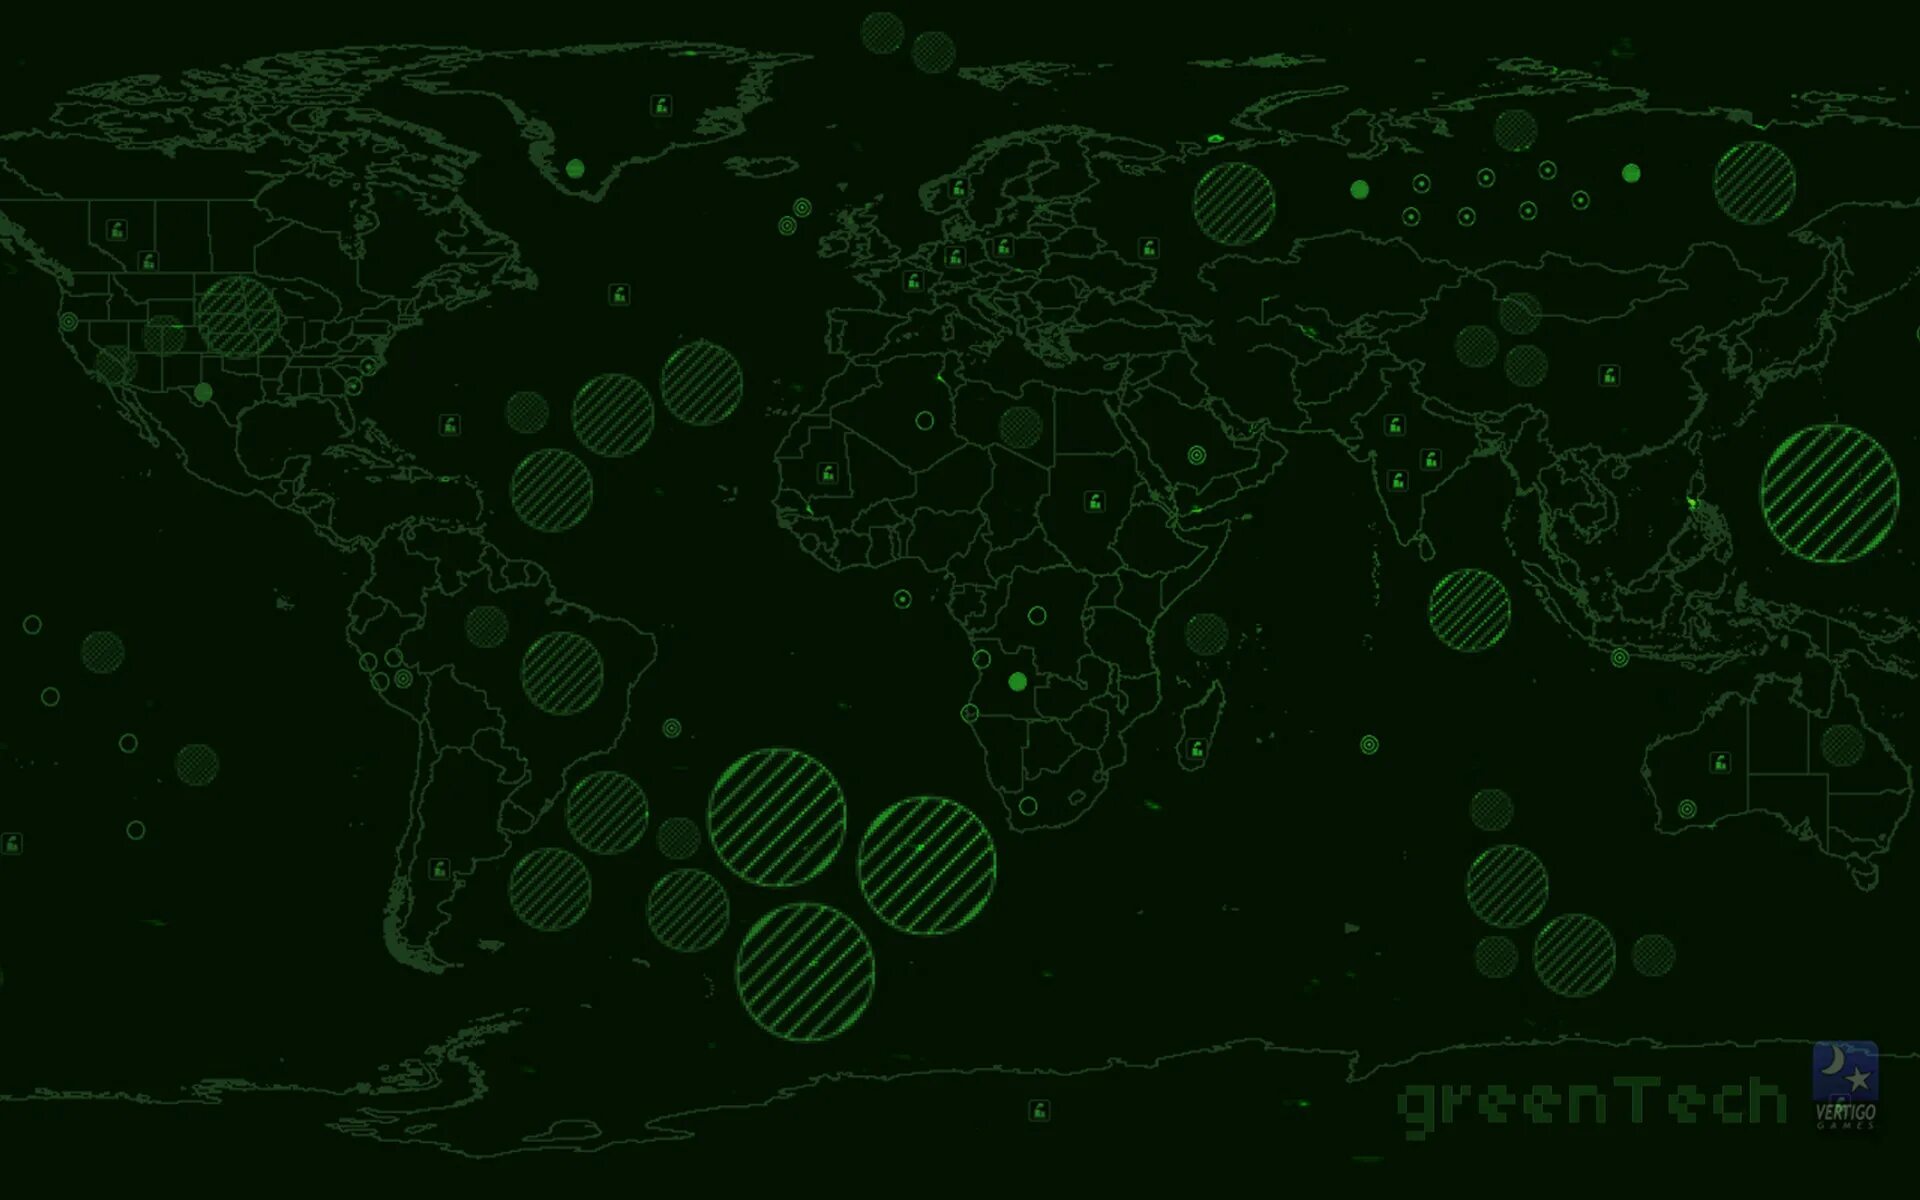 Карта Грин теч. Зеленый фон для карты. Карта GREENTECH. Карта зеленого цвета.